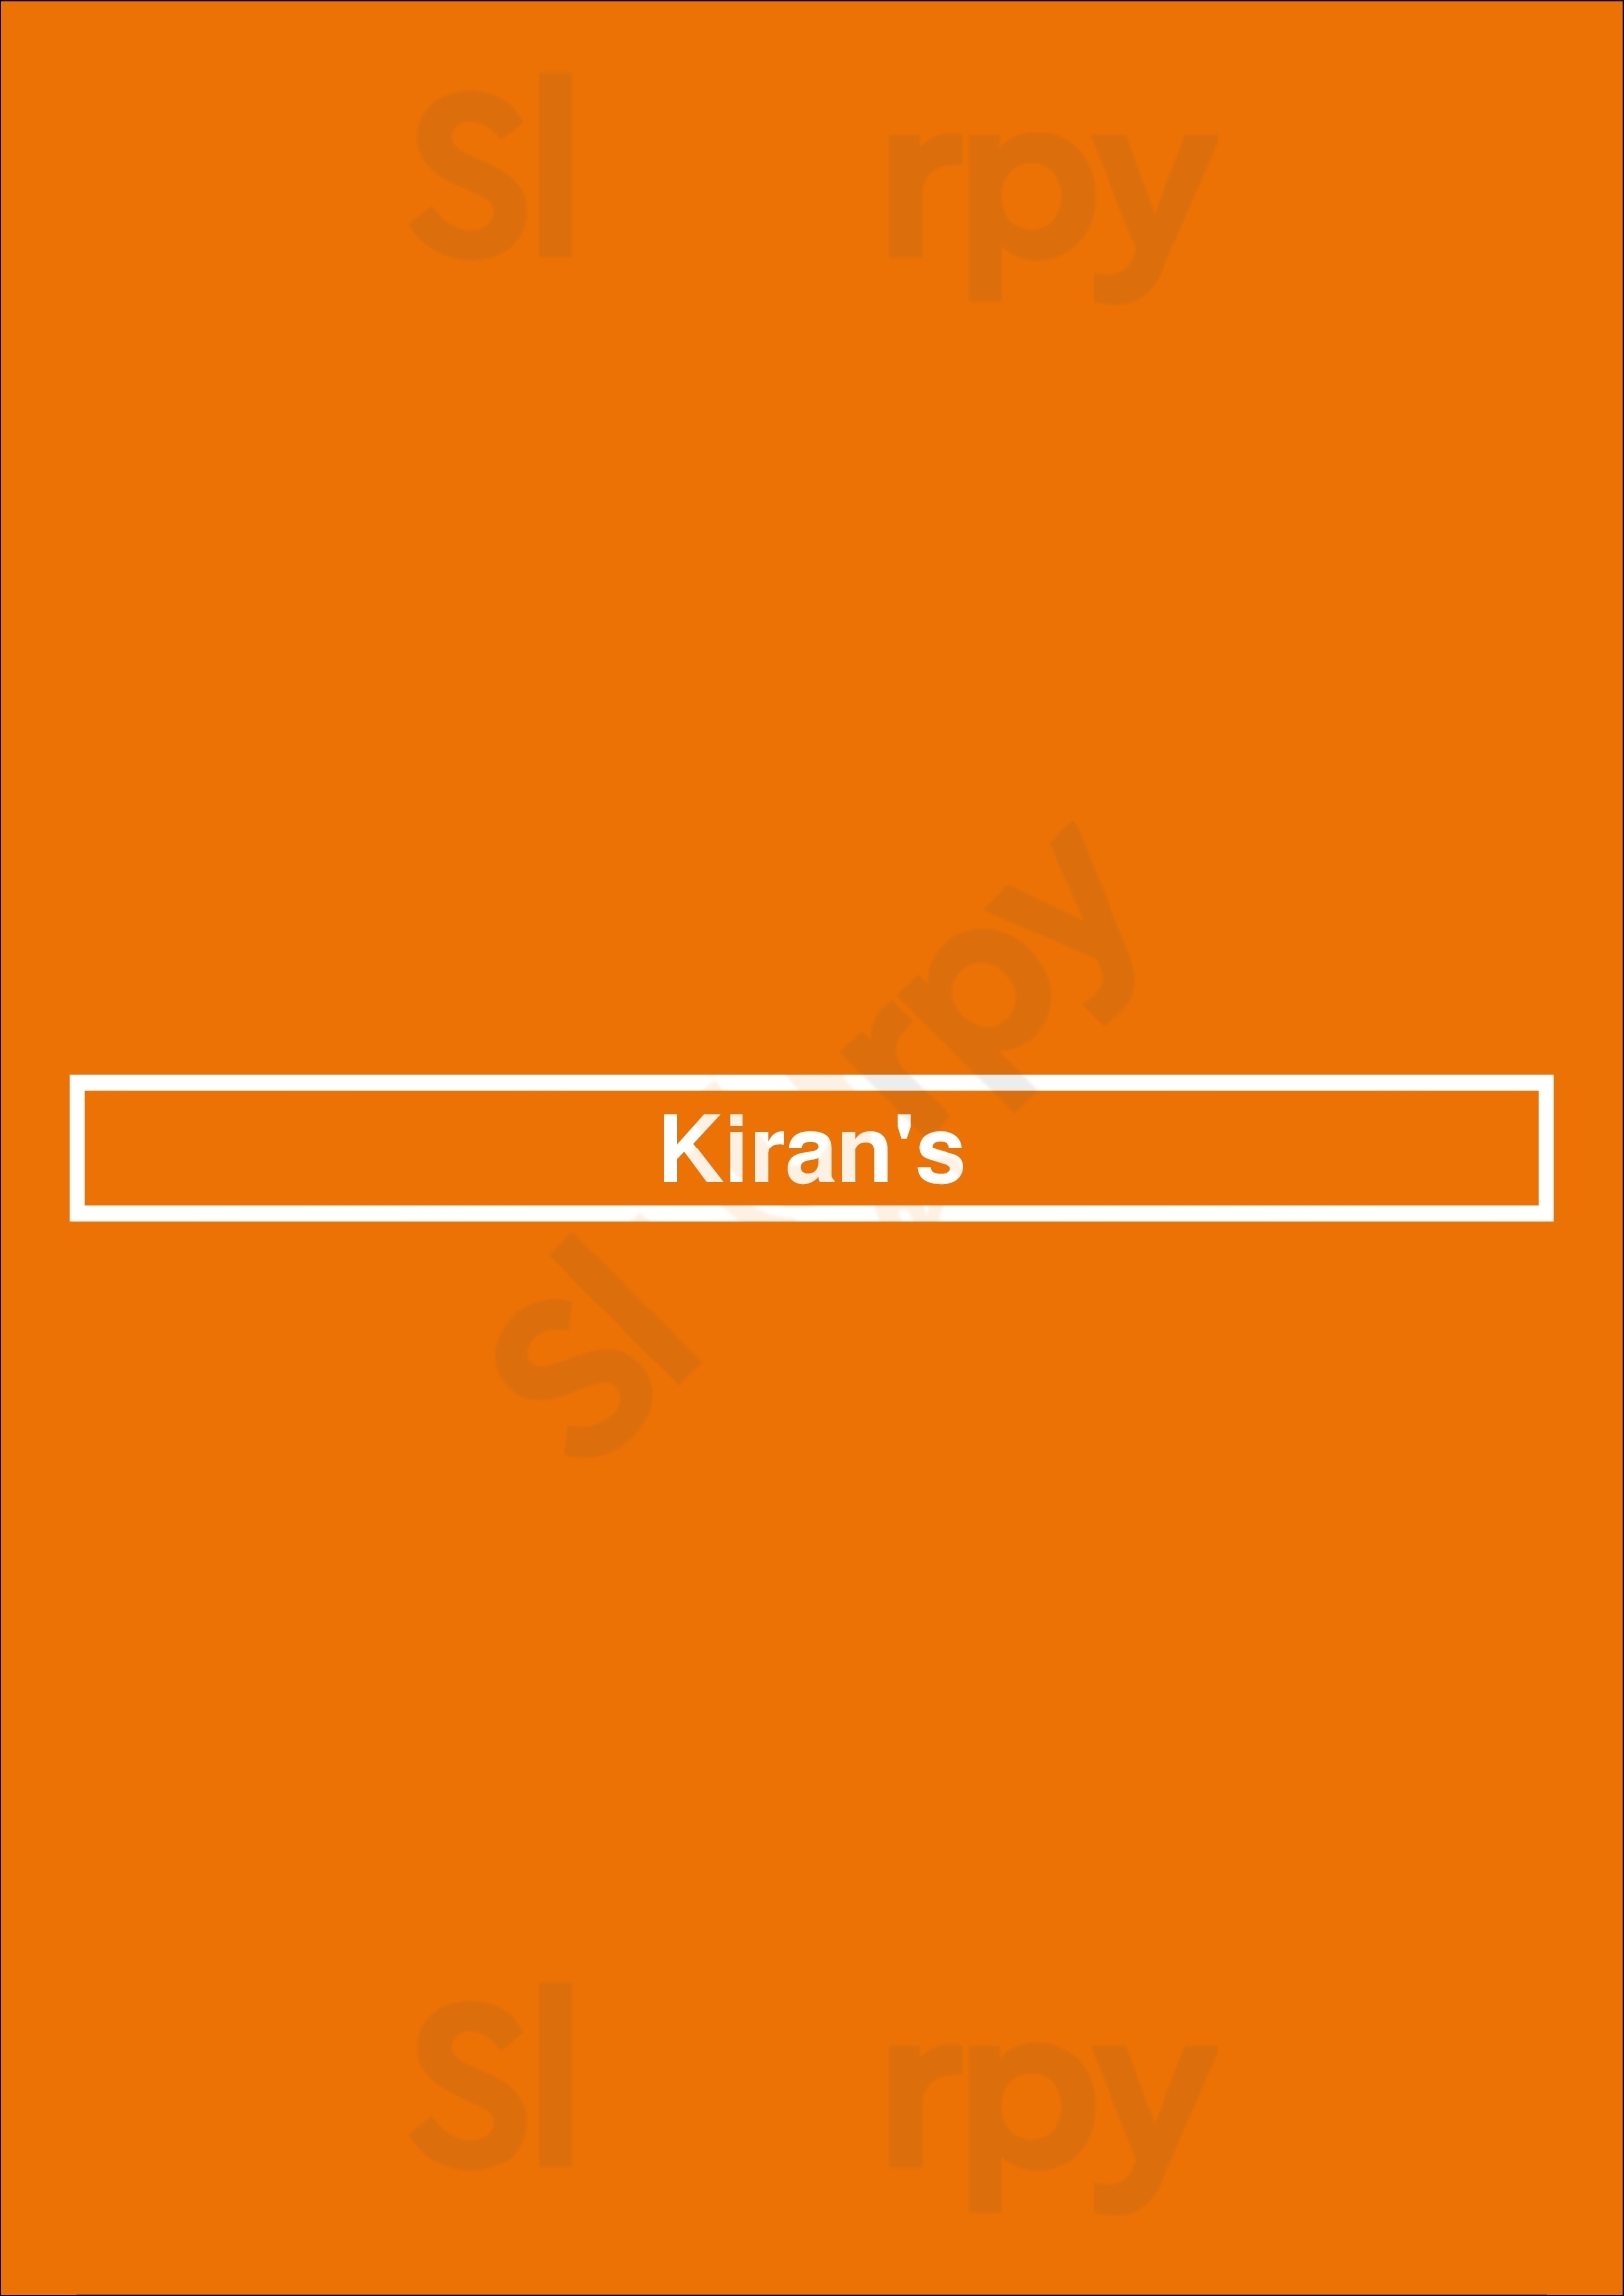 Kiran's Houston Menu - 1